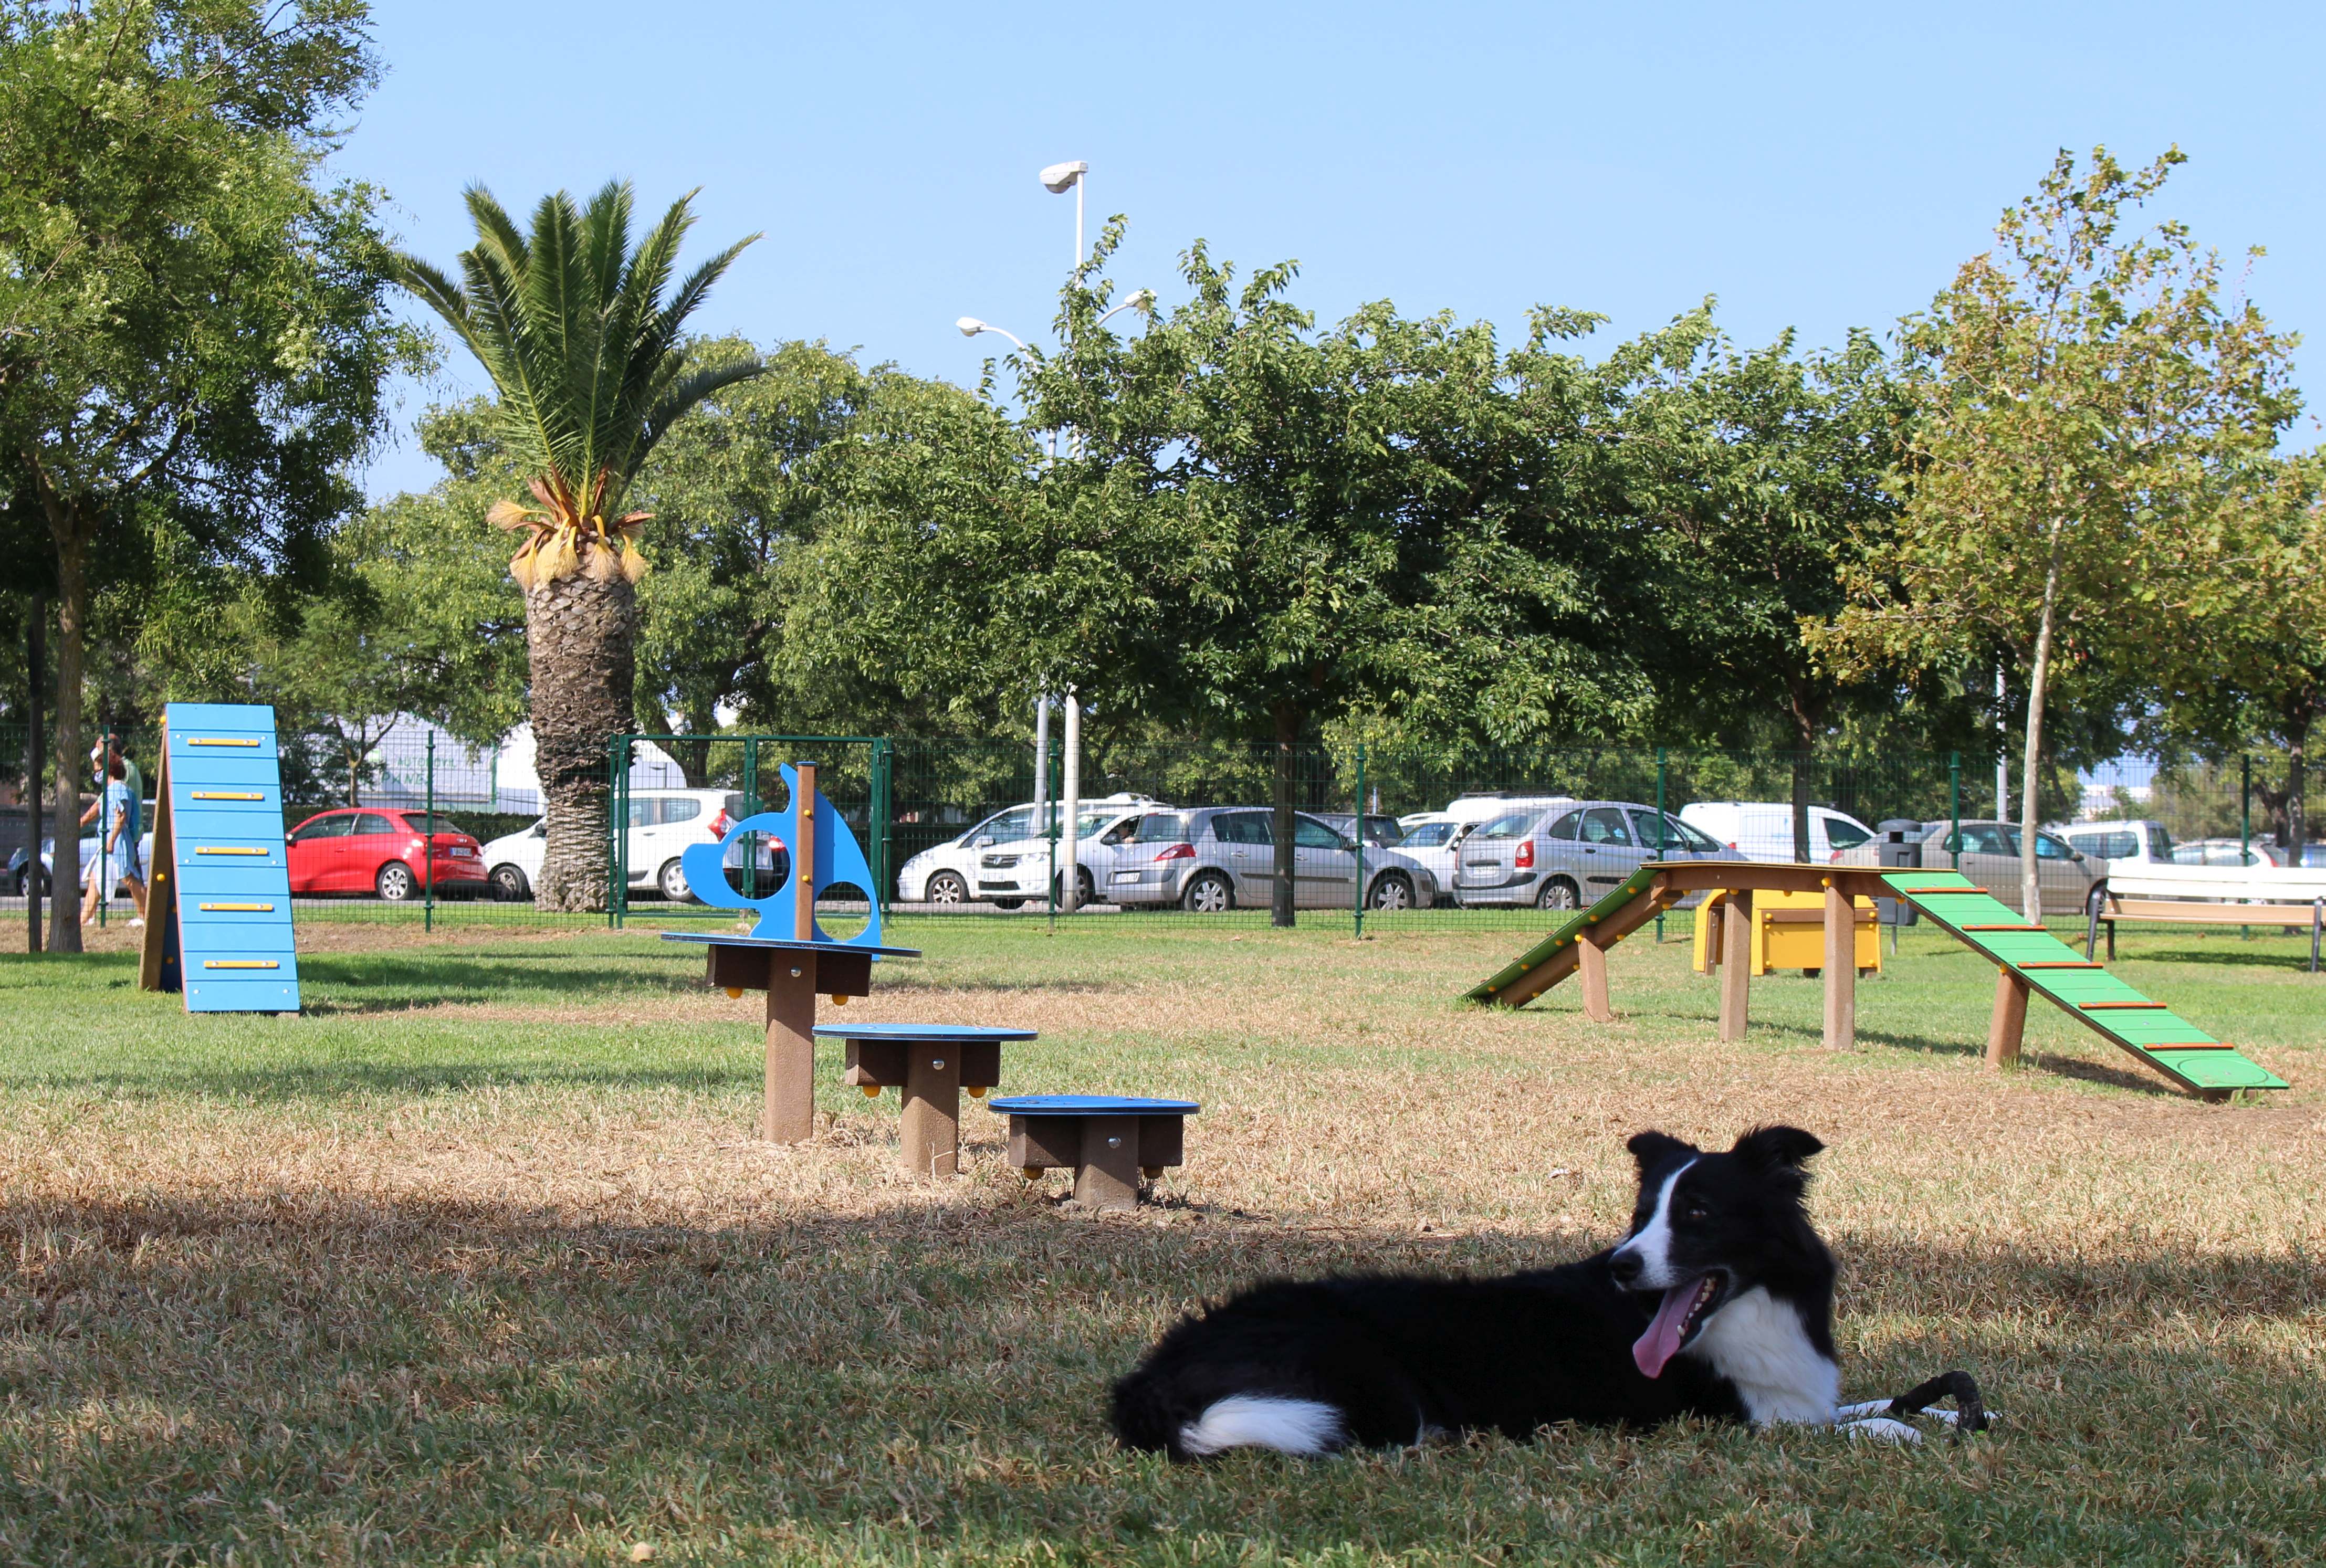 Primer parque acuático para perros en España – N+